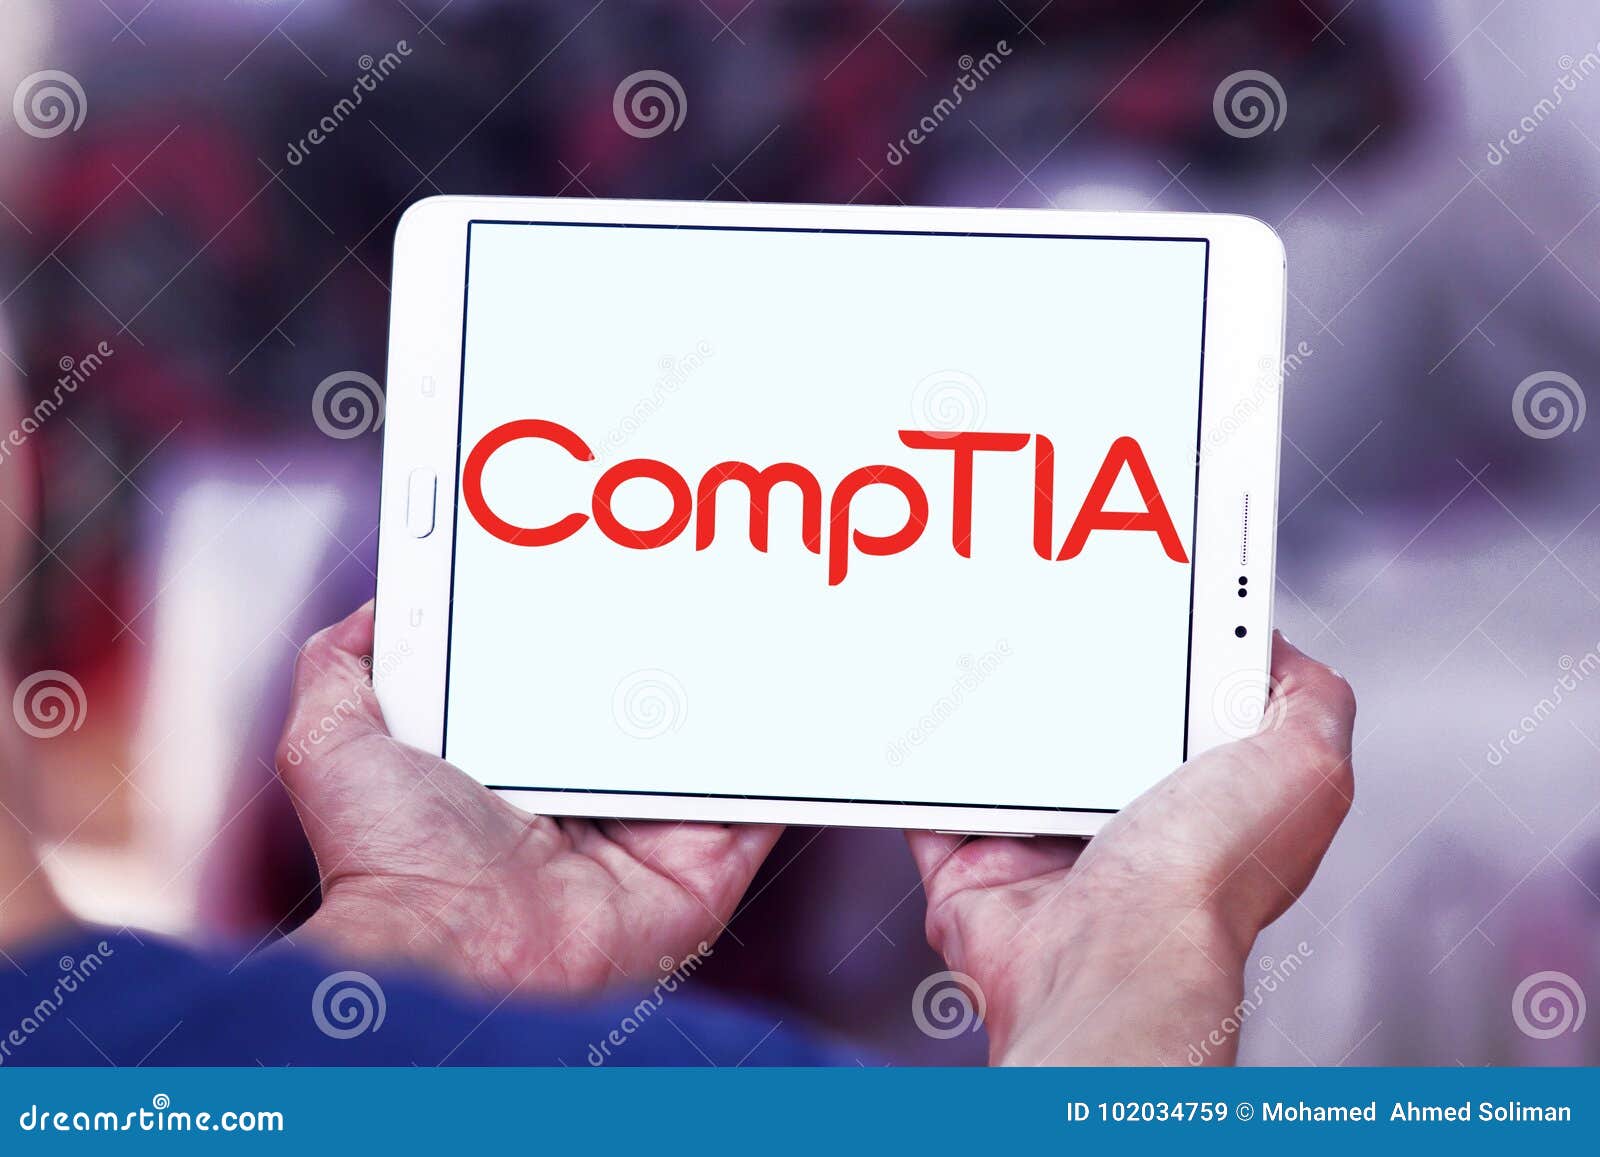 Λογότυπο CompTIA στην ταμπλέτα της Samsung Η ένωση βιομηχανίας υπολογίζοντας τεχνολογίας, CompTIA, εκδίδει τις επαγγελματικές πιστοποιήσεις για τη βιομηχανία της τεχνολογίας της πληροφορίας τεχνολογίας πληροφοριών Θεωρείται μια από τις τοπ εμπορικές ενώσεις βιομηχανιών της τεχνολογίας της πληροφορίας ` s